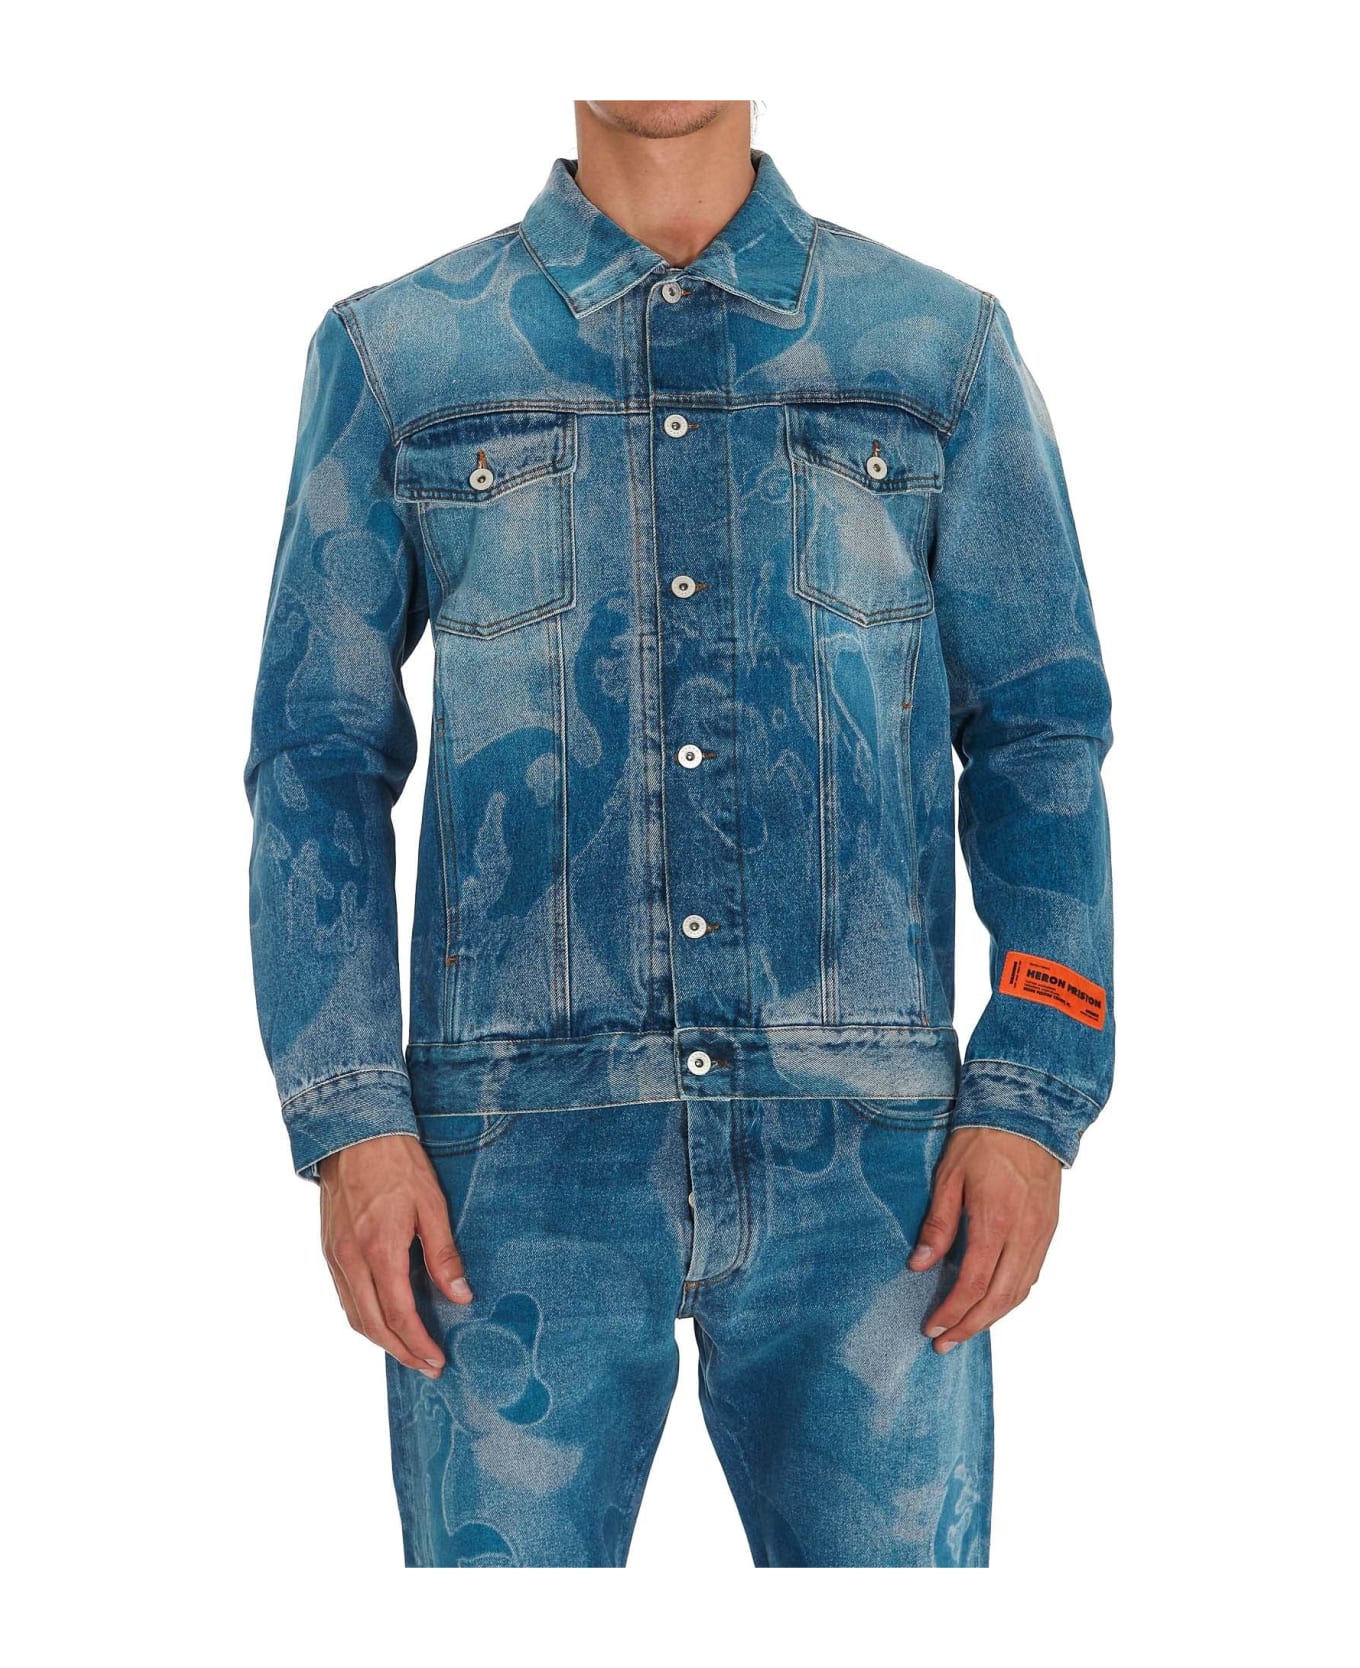 HERON PRESTON Camouflage Print Denim Jacket - DENIM BLUE